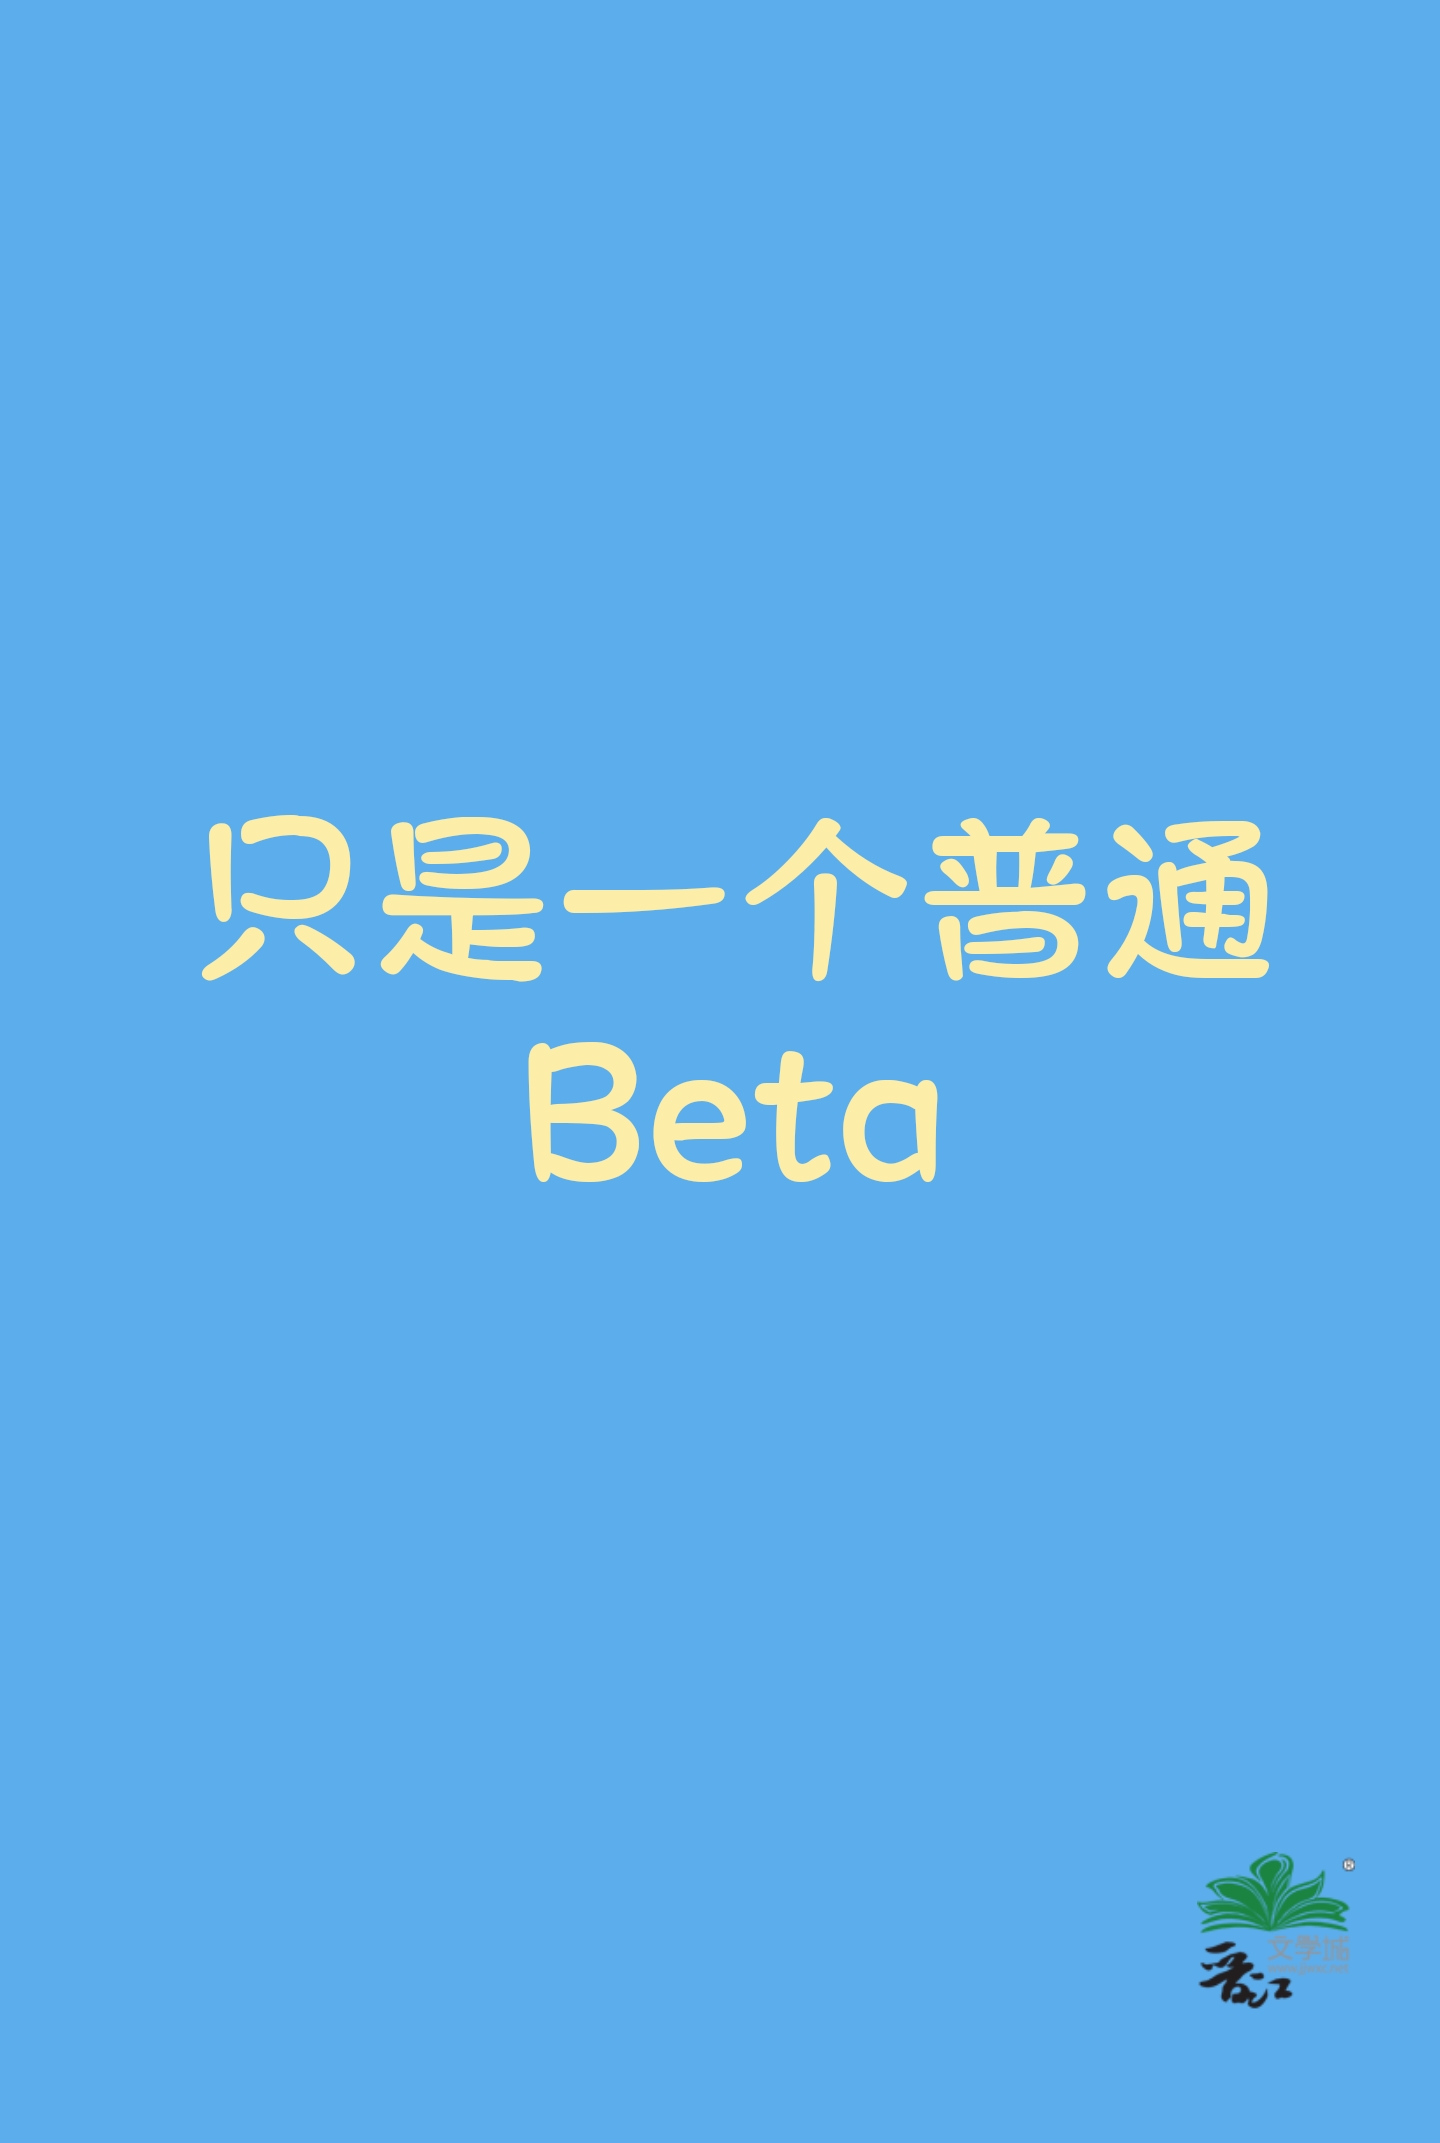 普通的beta是什么意思